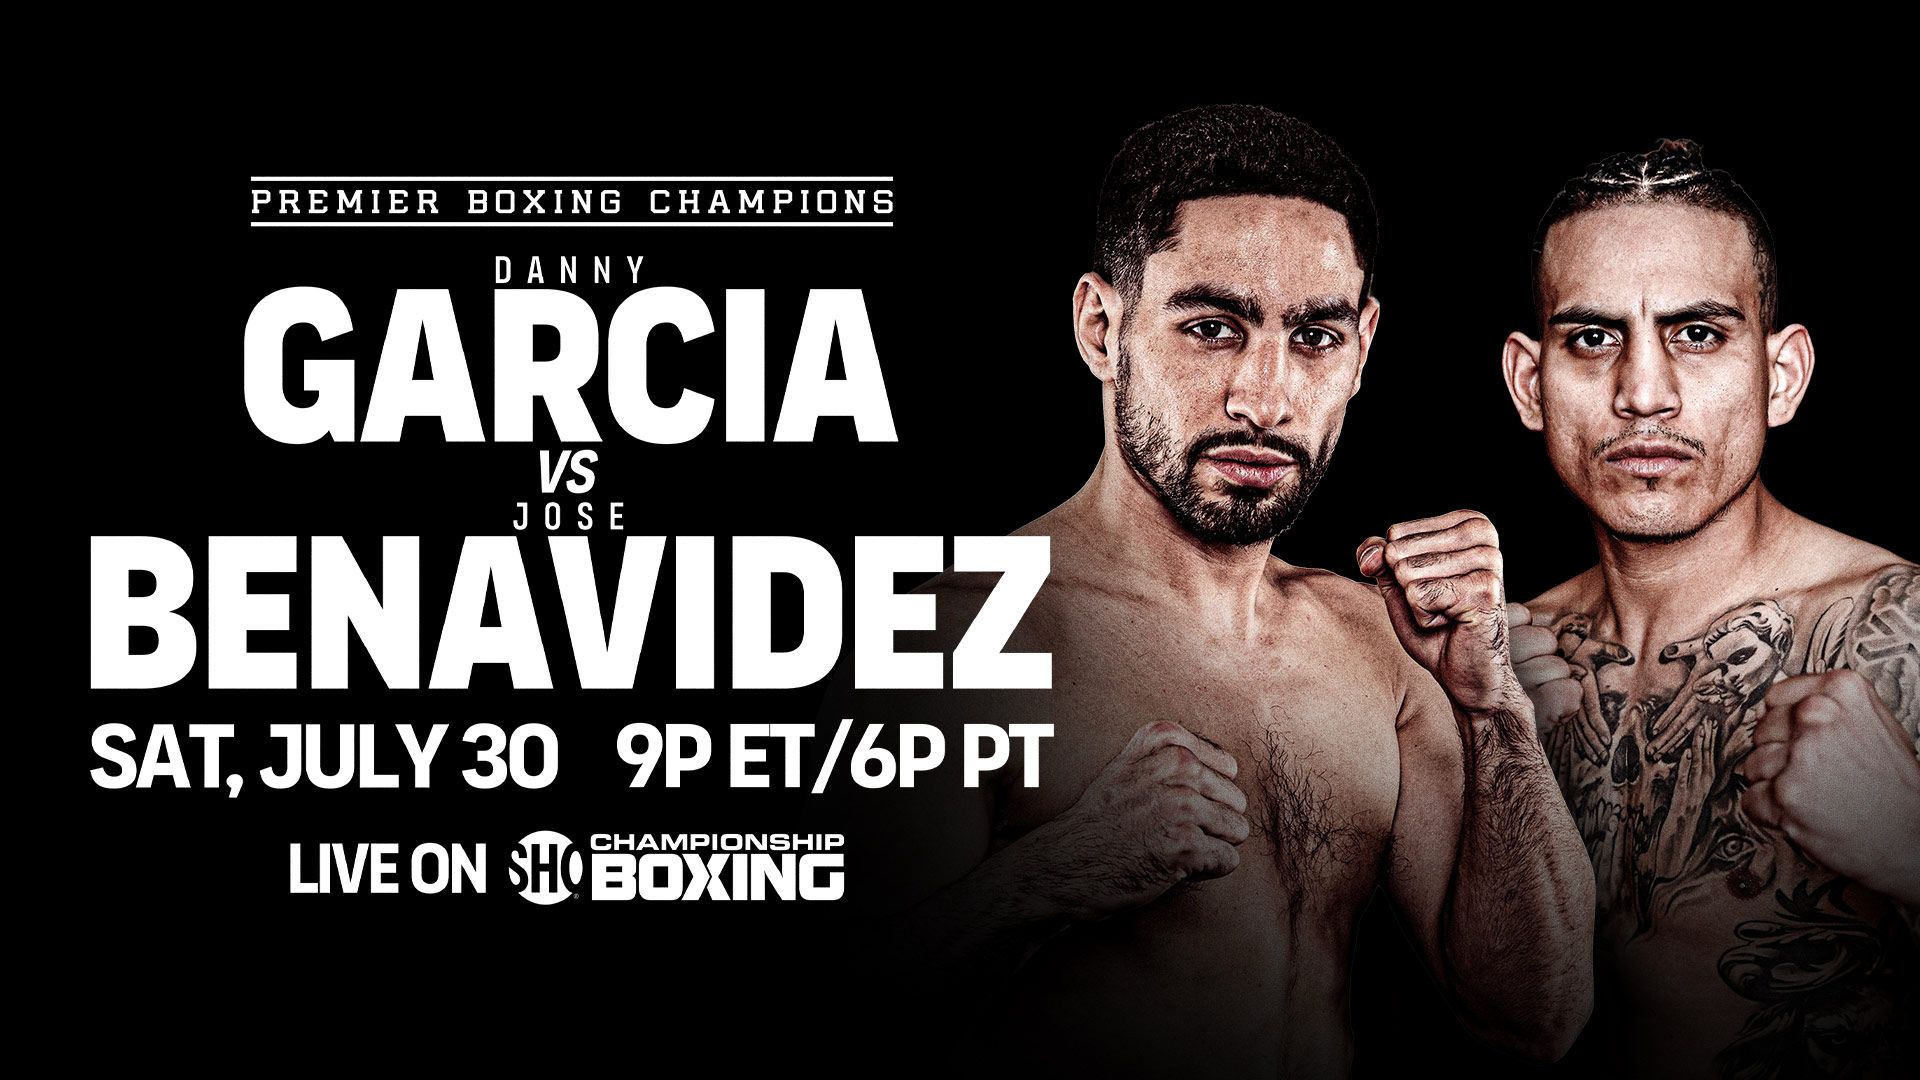 Danny Garcia vs Jose Benavidez Jr Card: Who is fighting?